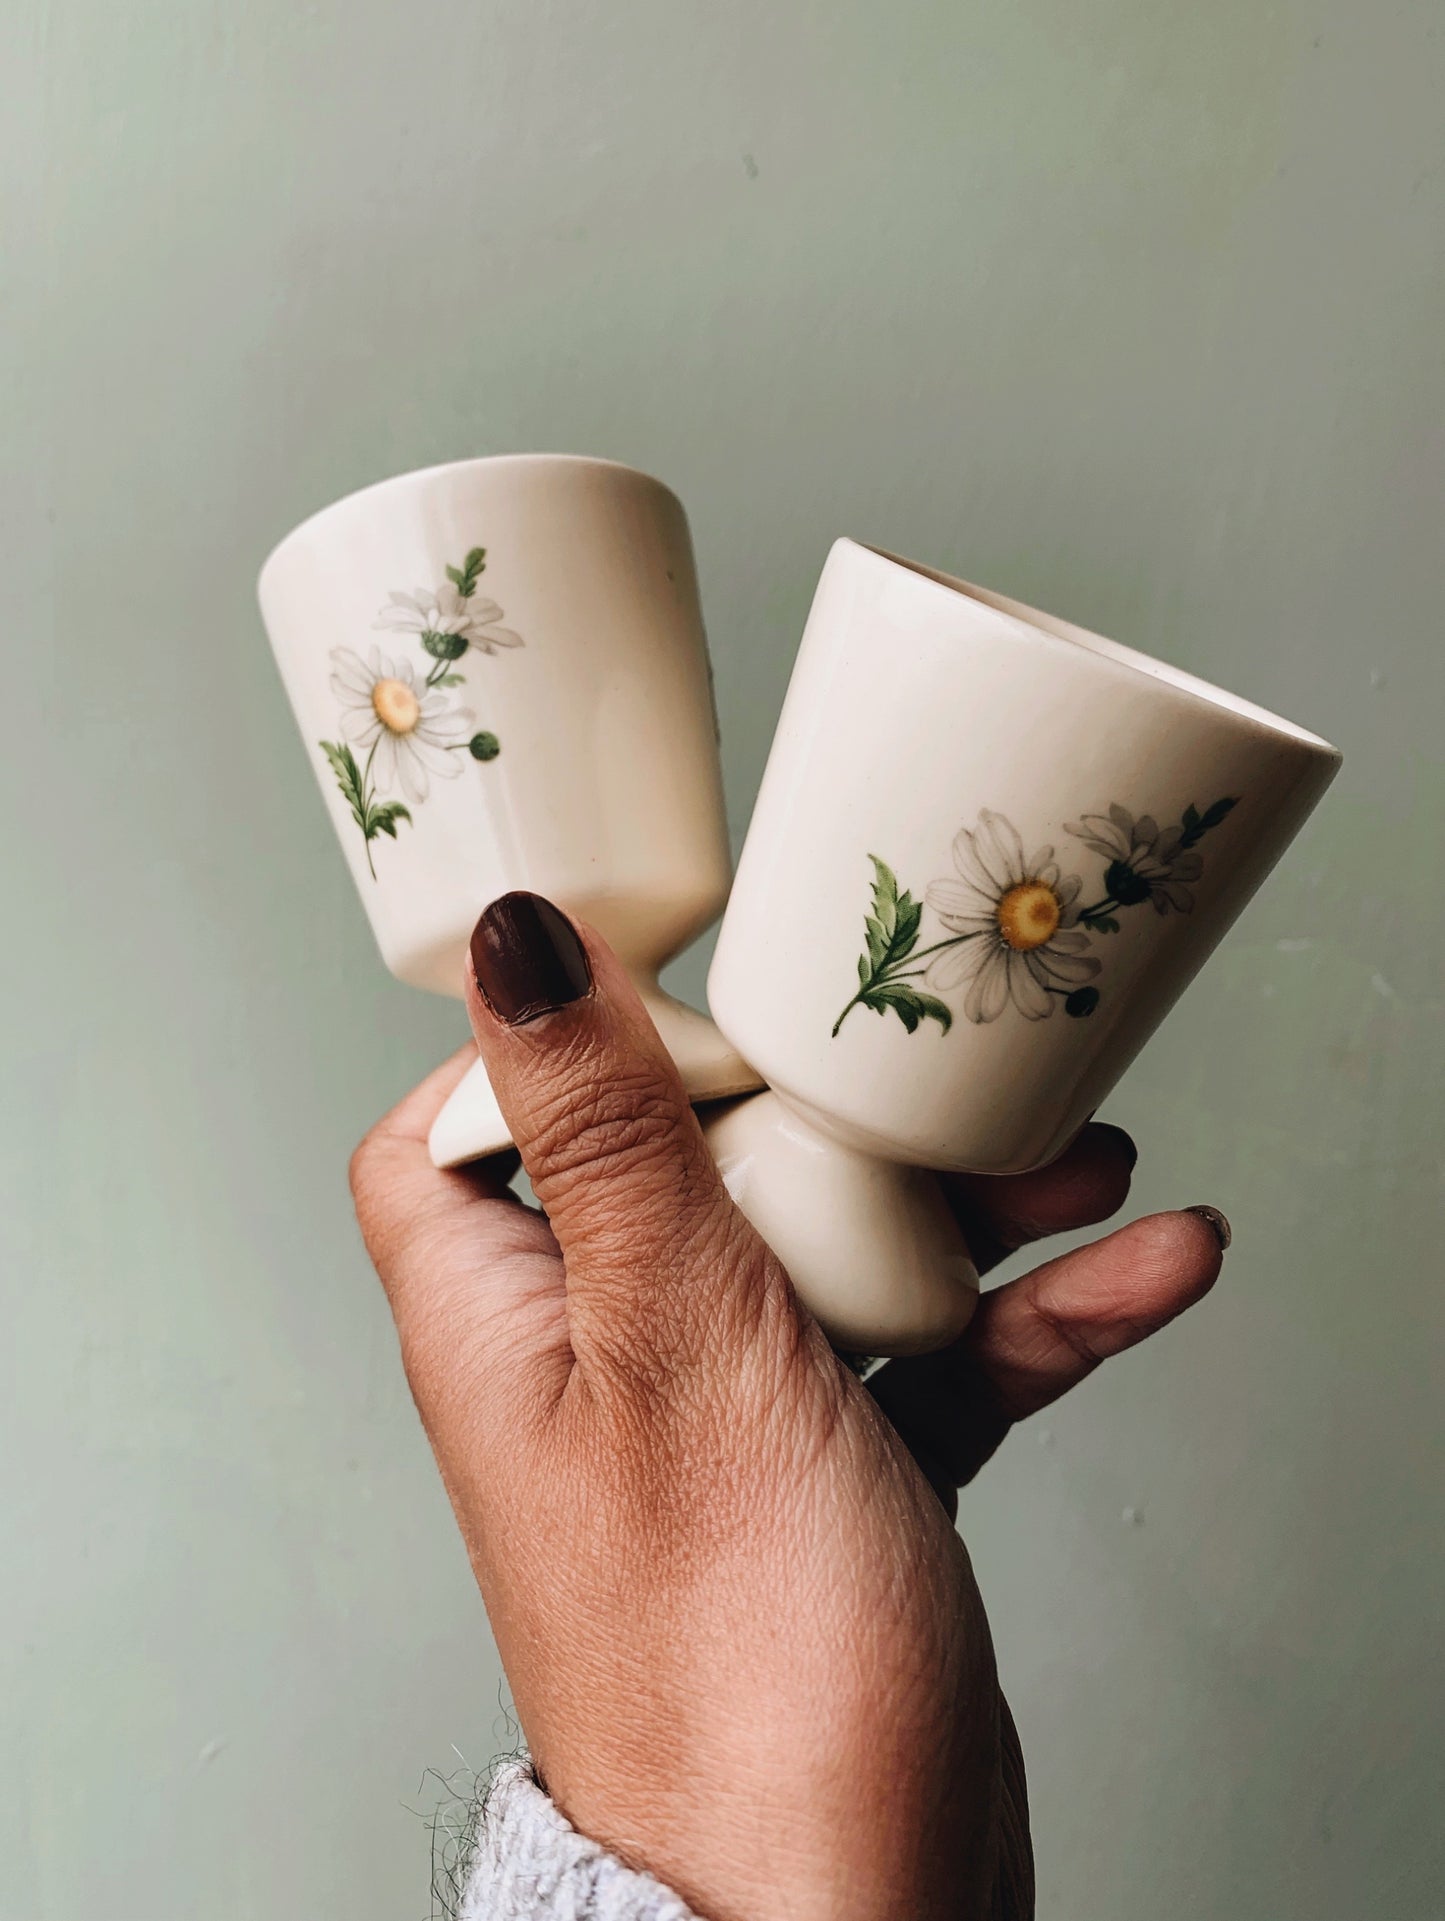 A Pair of Retro Ceramic Daisy Egg Cups